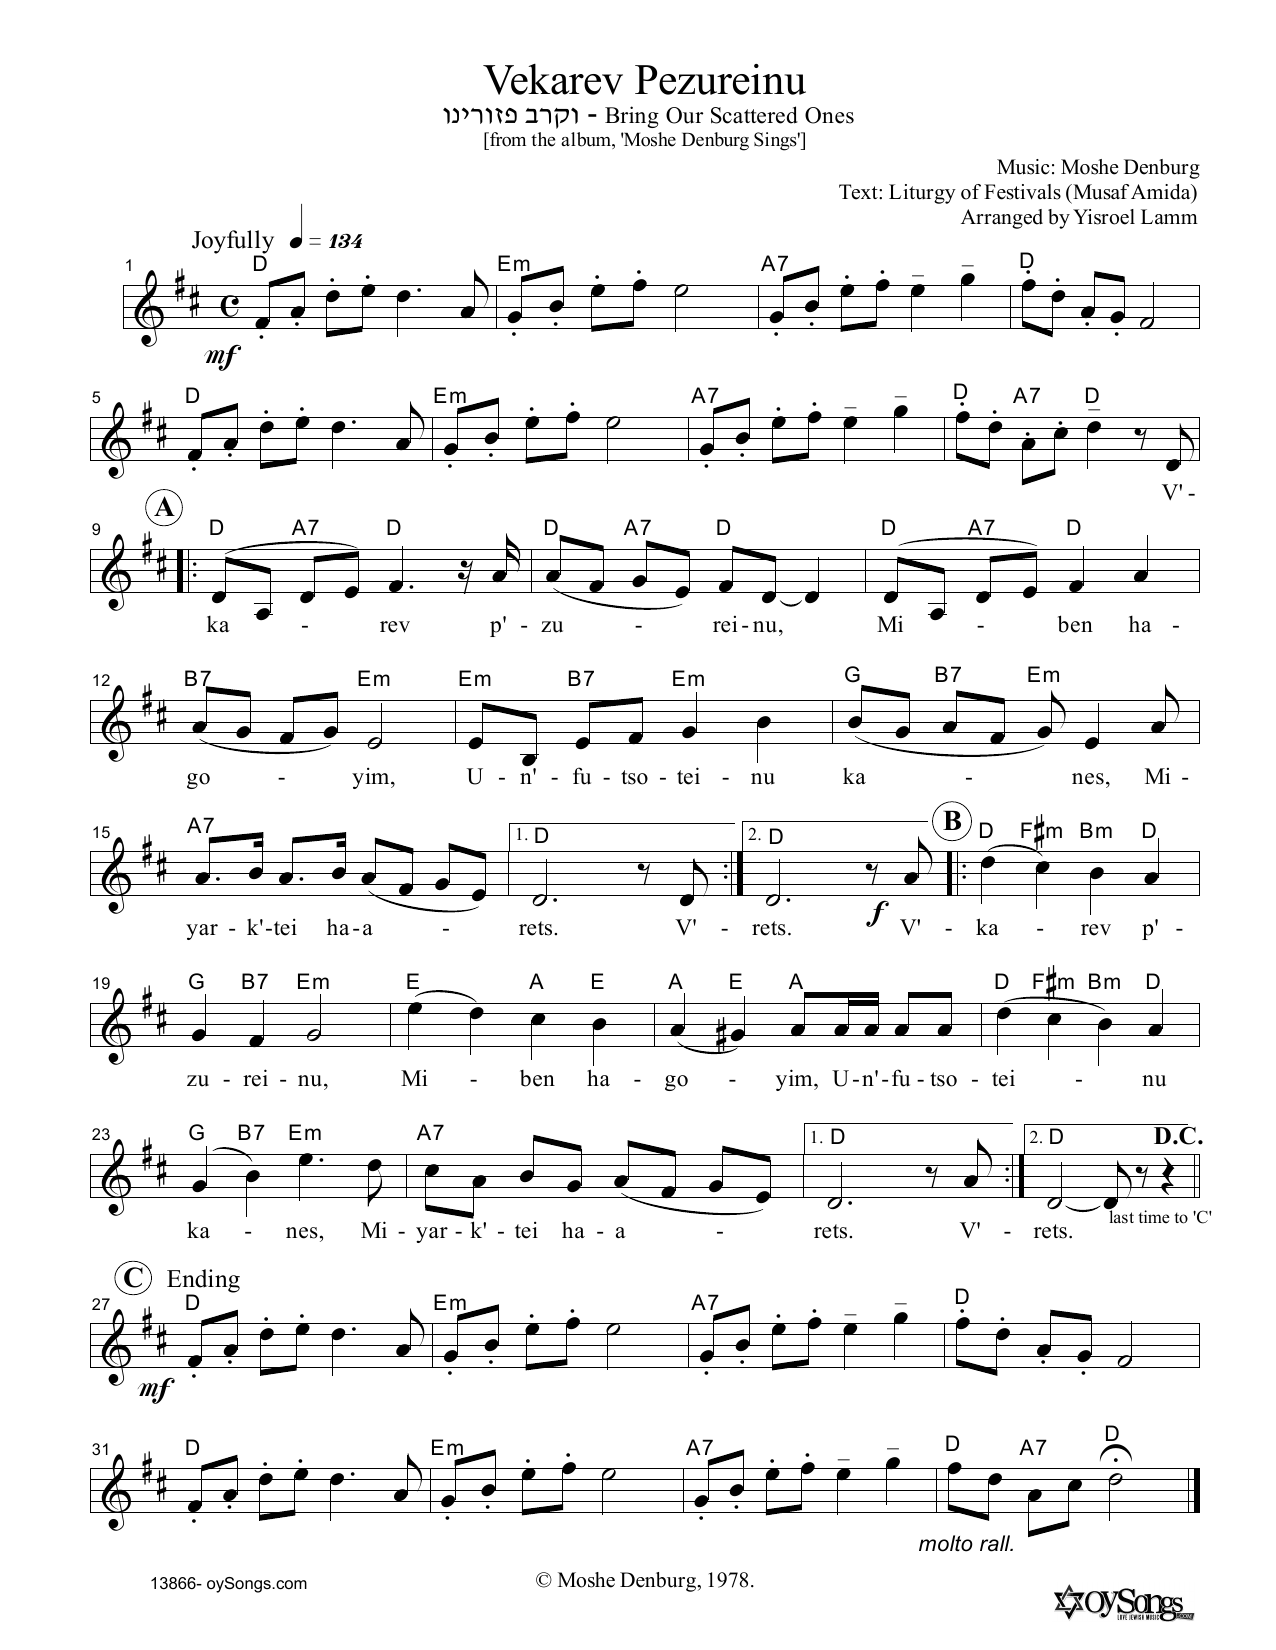 Moshe Denburg Vekarev Pezureinu Sheet Music Notes & Chords for Melody Line, Lyrics & Chords - Download or Print PDF